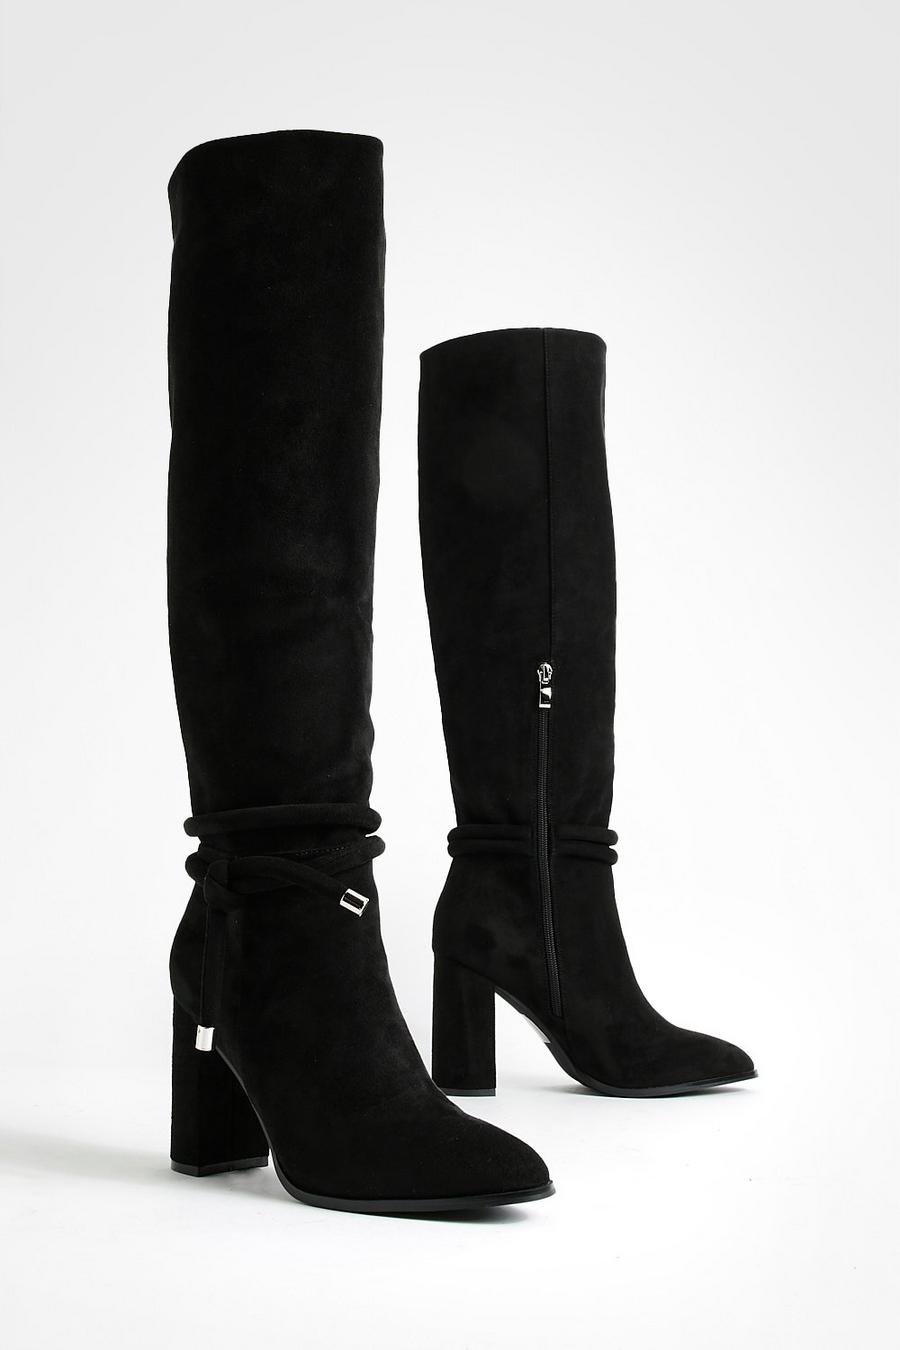 Kniehohe Stiefel mit Schnür-Detail und Blockabsatz, Black